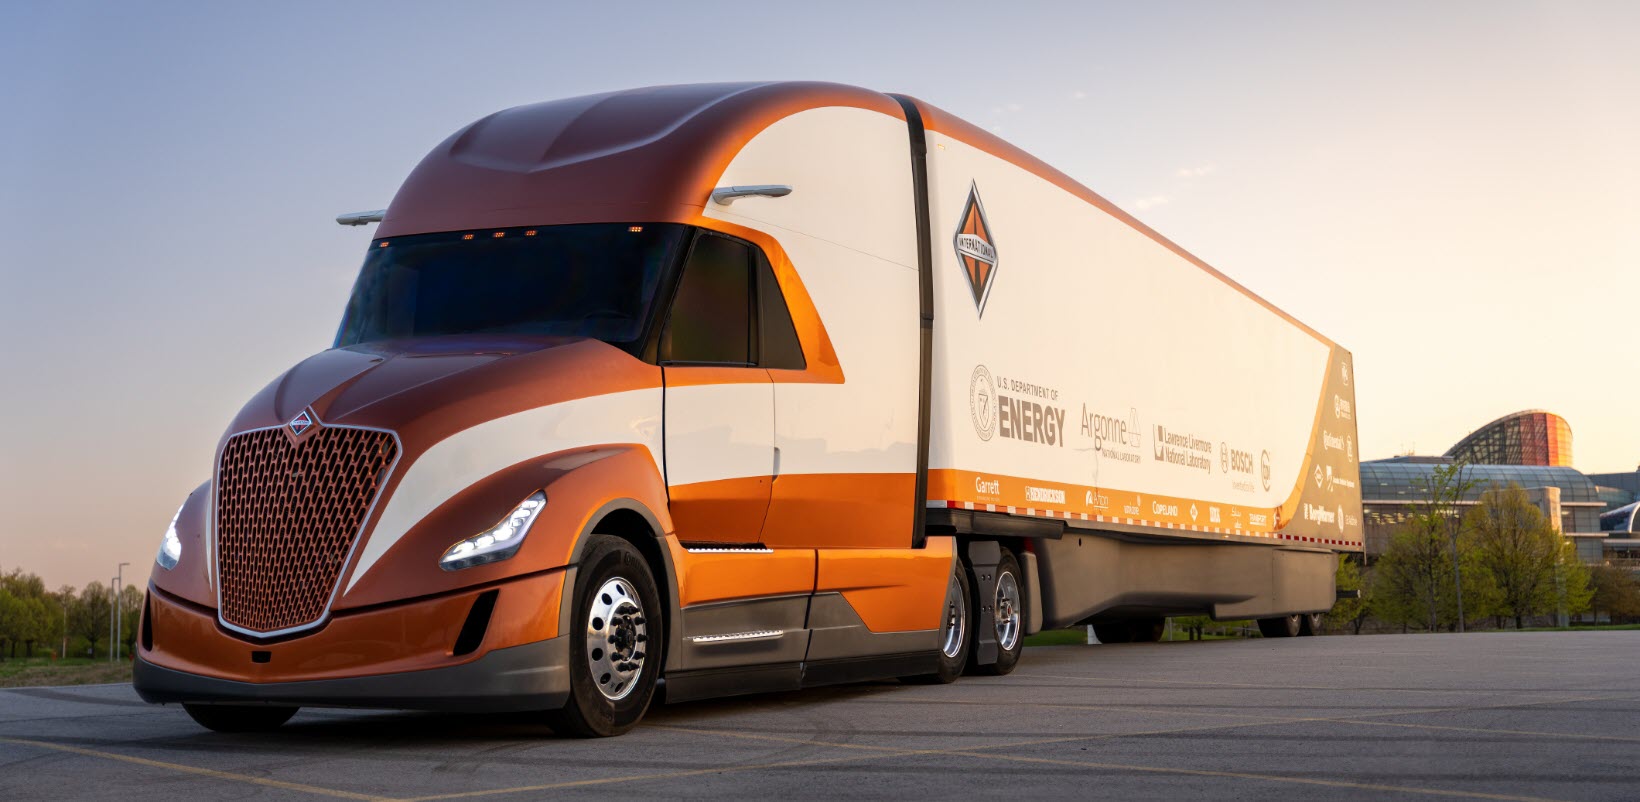 Conheça o caminhão mais aerodinâmico e eficiente construído pela Volvo até hoje